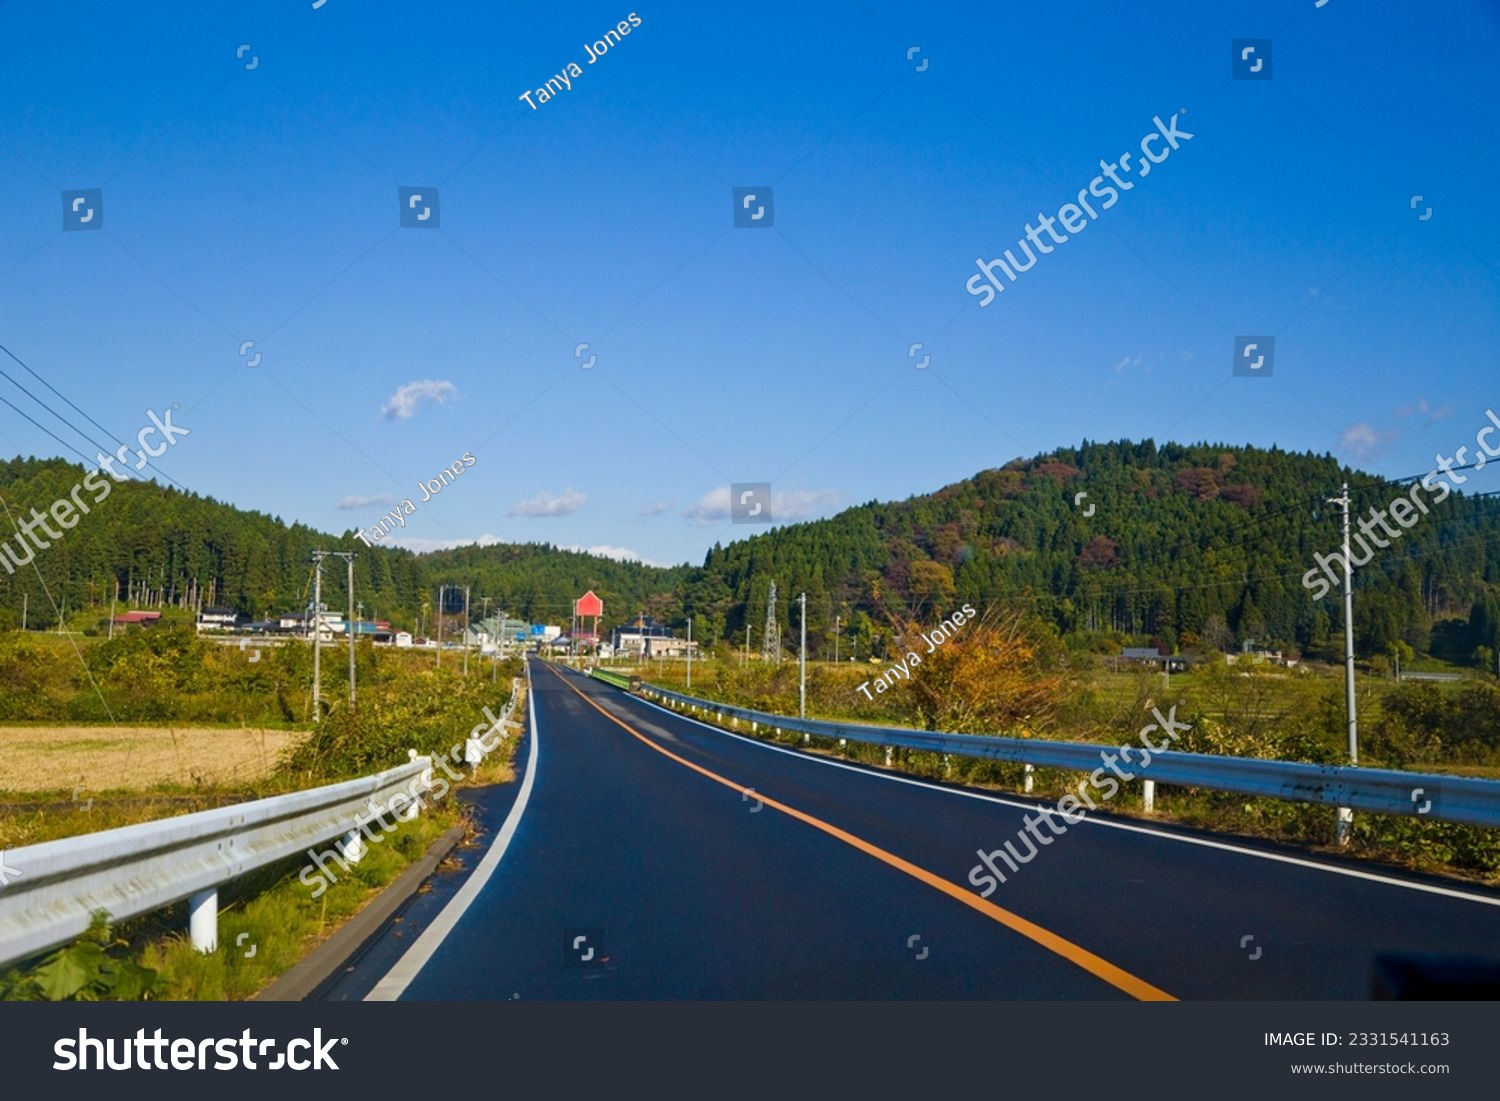 Tohoku drive trip : Lanscape of Yamagata countryside with mountains road and rice paddies, Yamagata, Tohoku, Japan. #2331541163